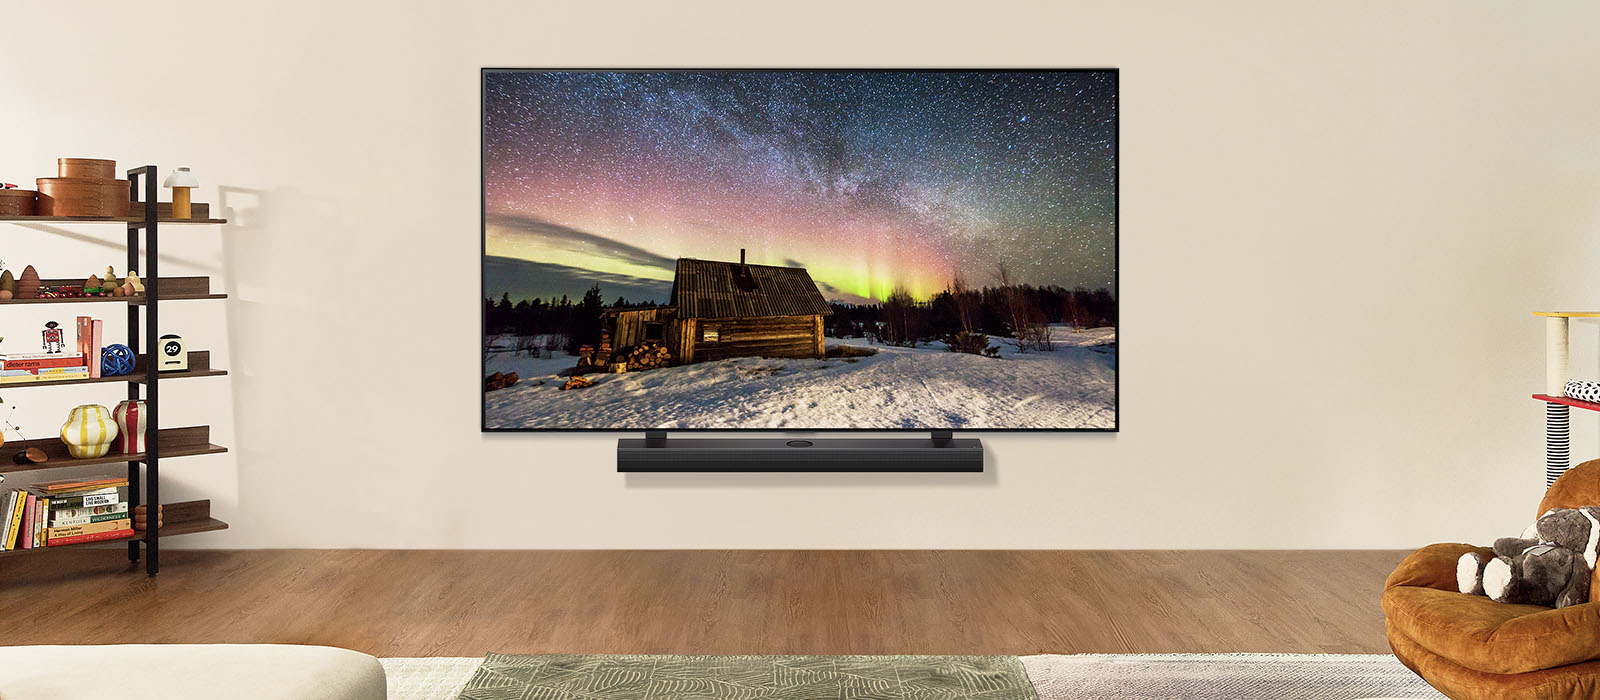 白天现代化客厅里的 LG 电视 和 LG 音响。屏幕以绝佳的亮度显示北极光图像。